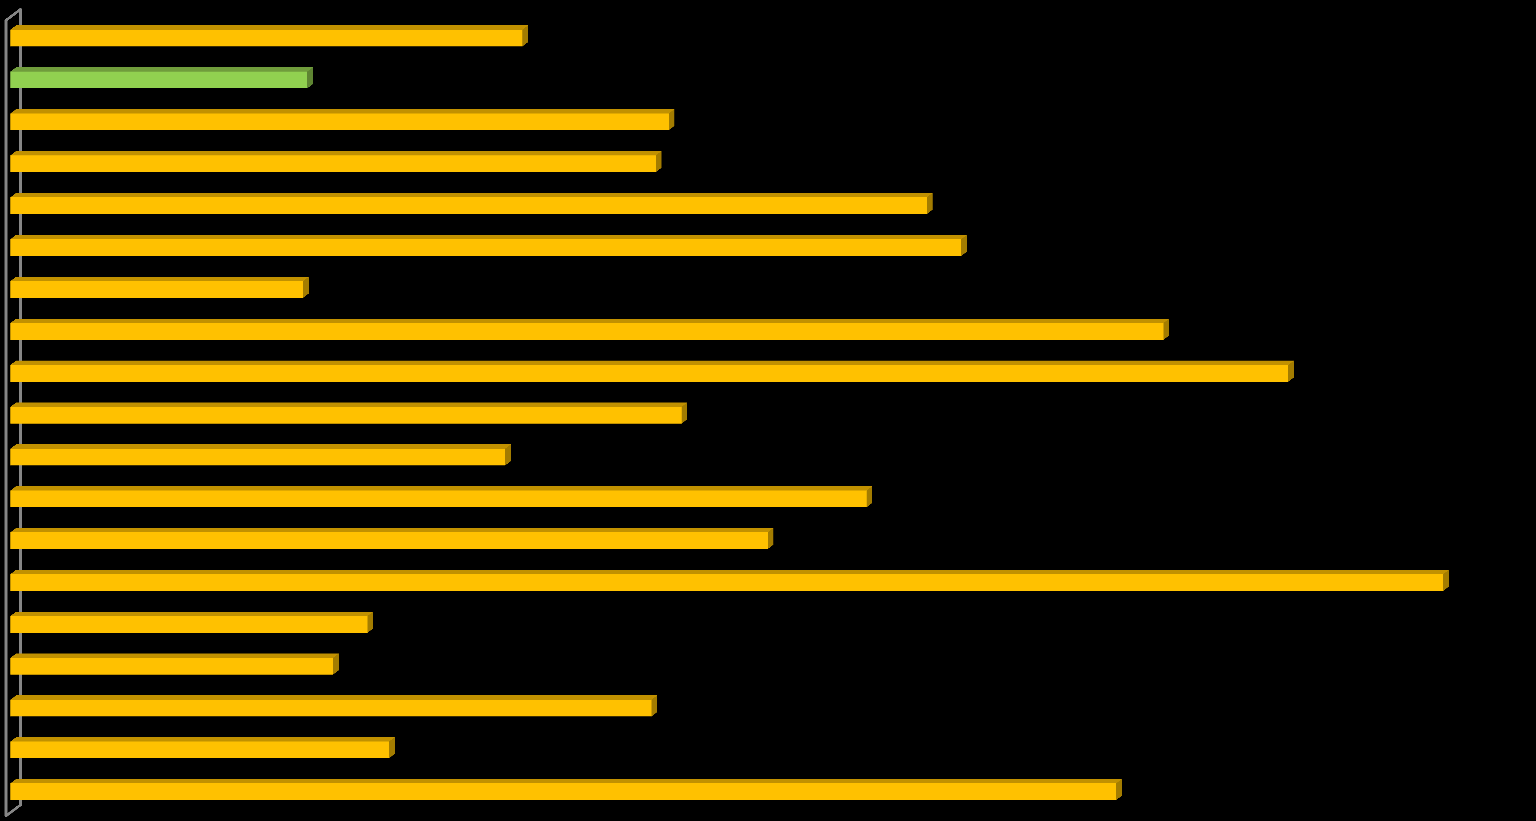 Antall deltakere avsluttet program i 2014 - pr.